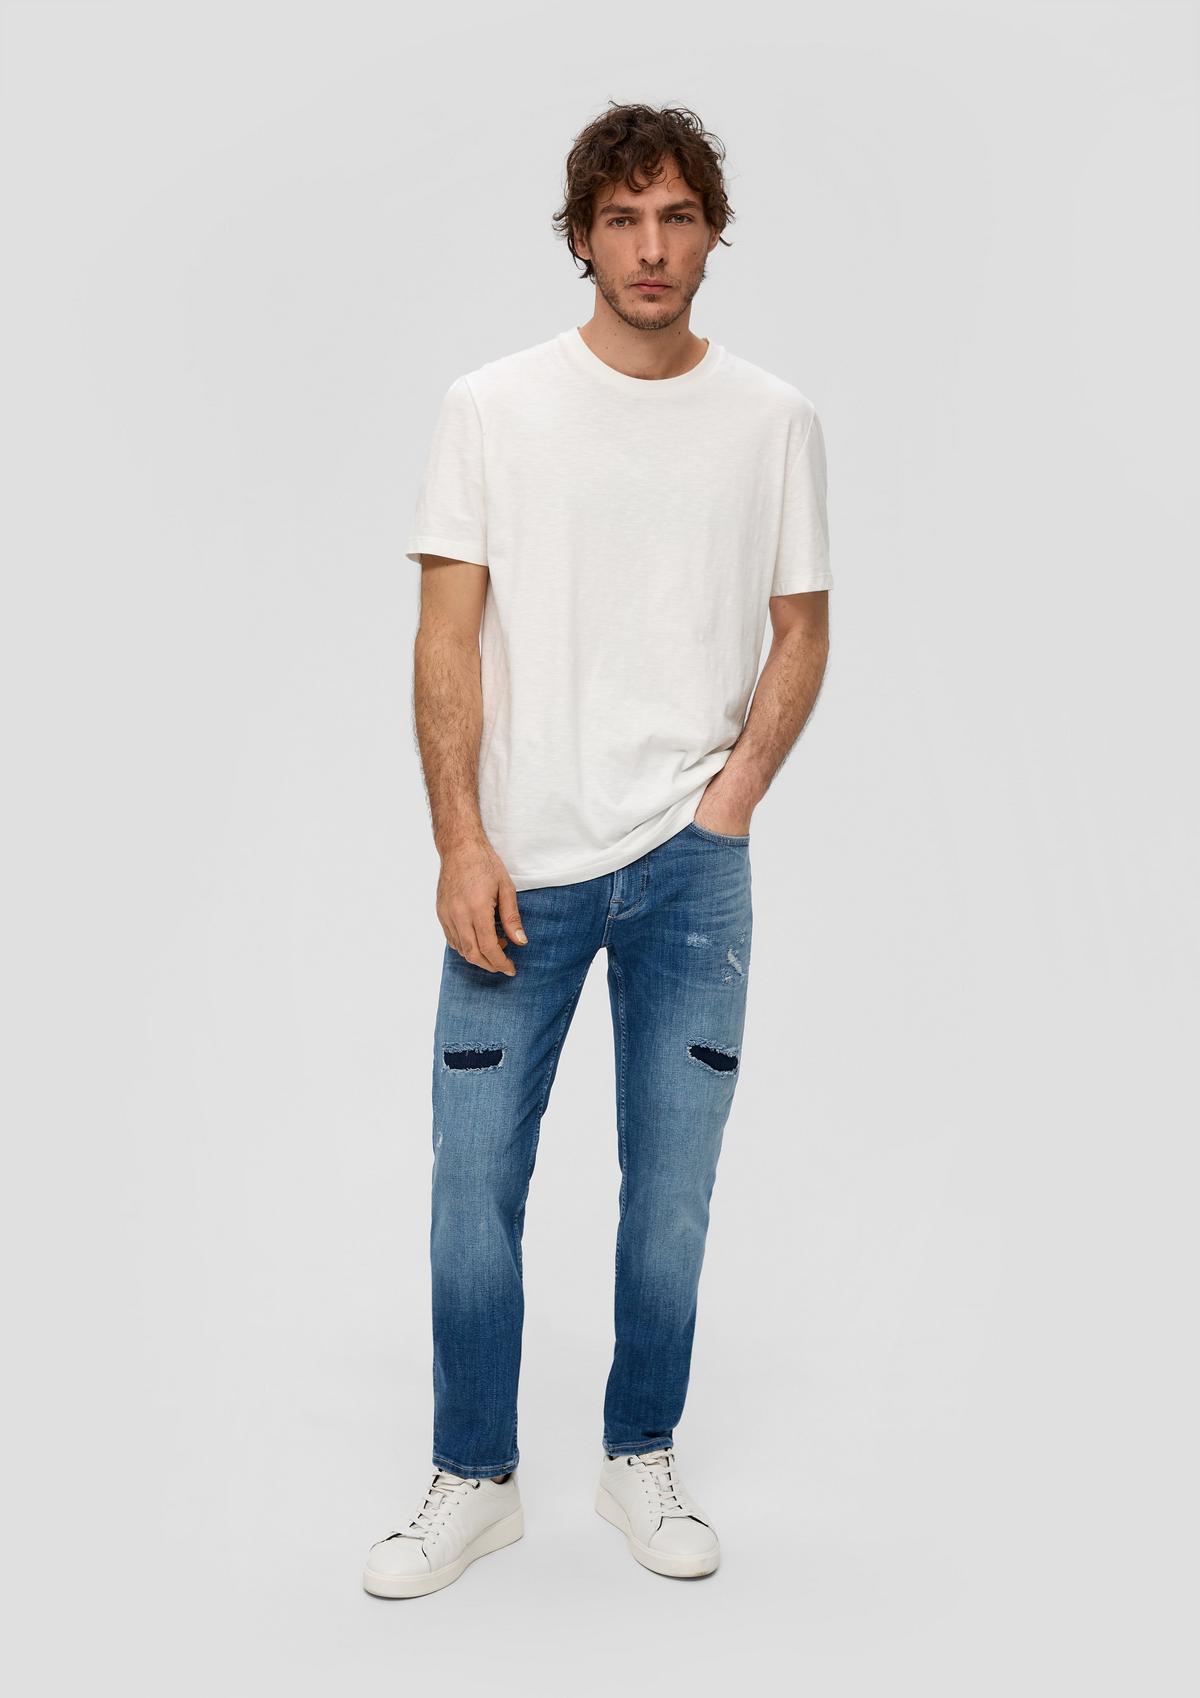 Jeans Nelio / Slim Fit / Mid Rise / Slim Leg